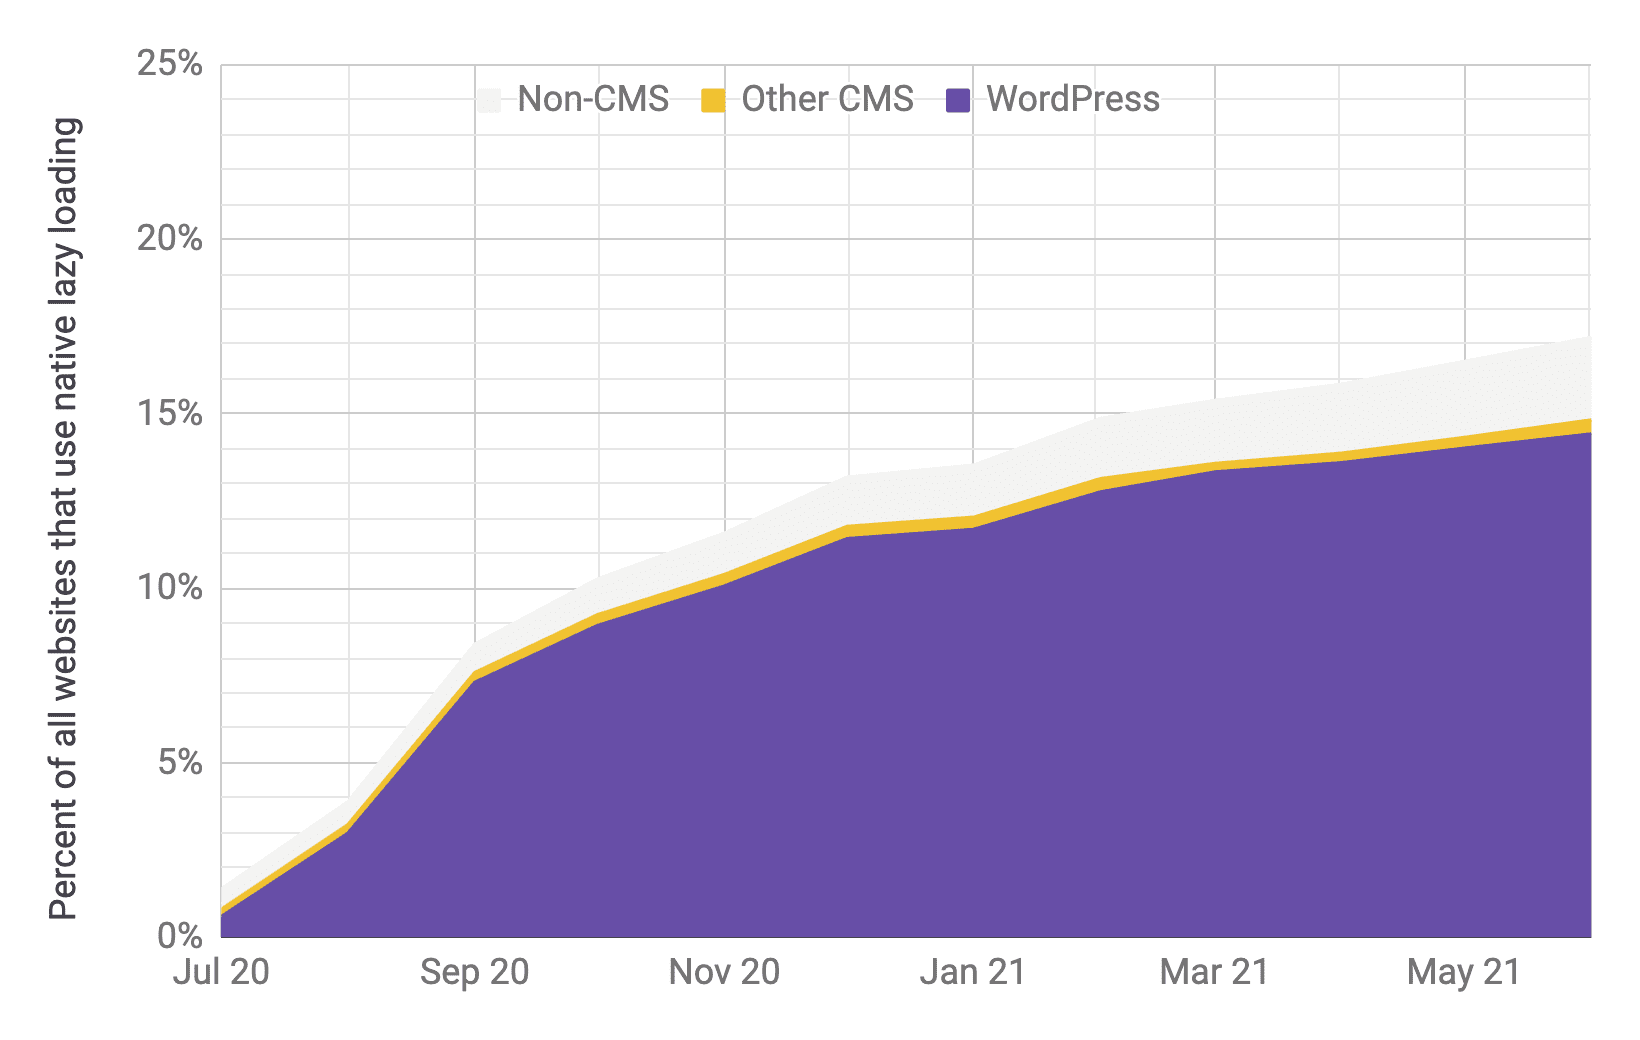 लेज़ी लोडिंग का इस्तेमाल करने का टाइम सीरीज़ चार्ट. इसमें, दूसरे सीएमएस और बिना सीएमएस की तुलना में, मुख्य तौर पर WordPress को इस्तेमाल किया जा रहा है. यह पिछले चार्ट से मिलते-जुलते अनुपात में है. चार्ट में बताया गया है कि जुलाई 2020 से जून 2021 के बीच, इस दर में तेज़ी से 1% से 17% की बढ़ोतरी हुई.